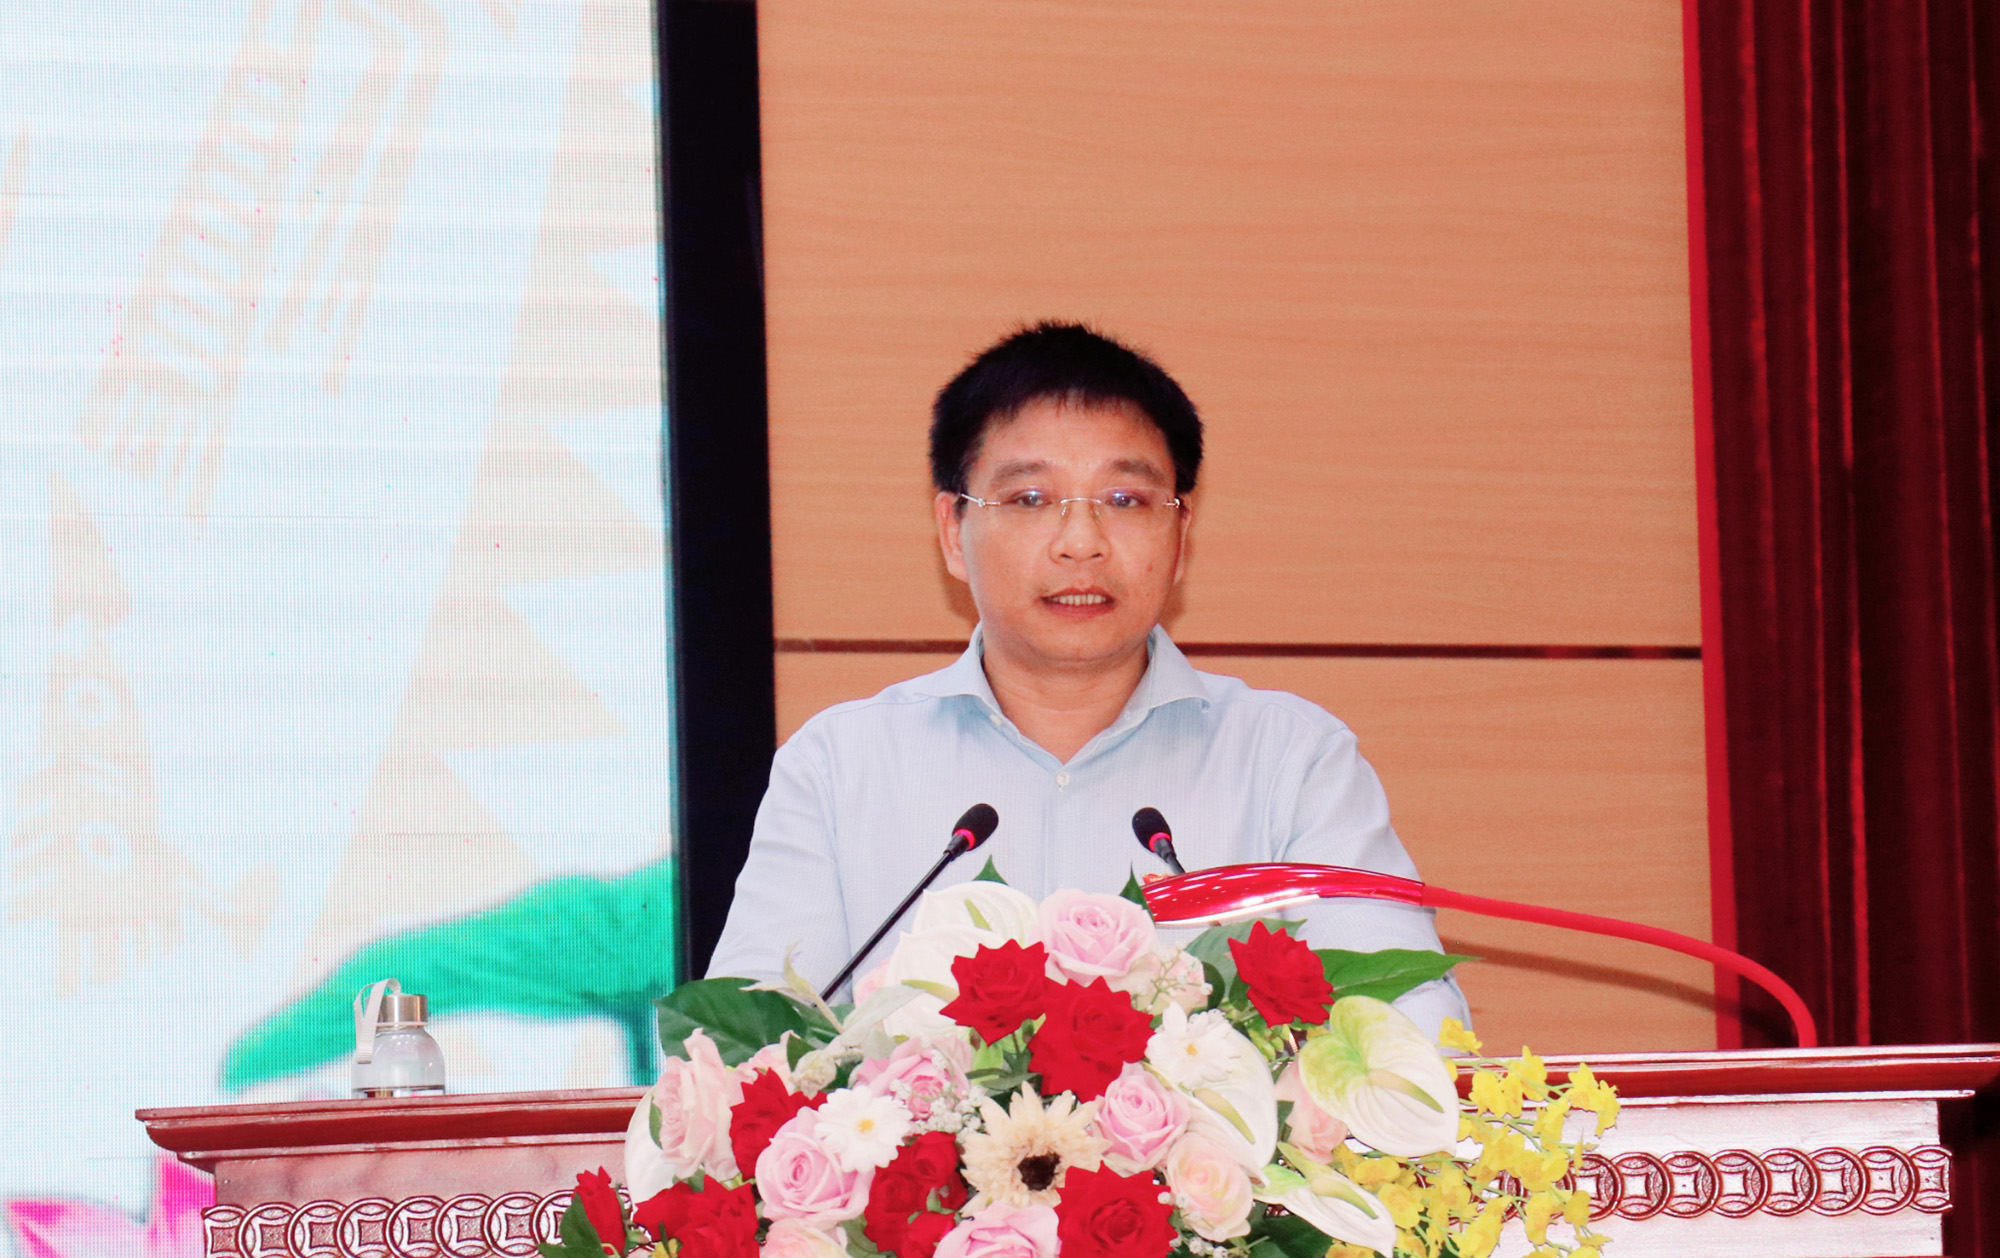 Đồng chí Nguyễn Văn Thắng, Chủ tịch UBND tỉnh, Trưởng đoàn Đại biểu Quốc hội tỉnh thông tin về hoạt động của Đoàn ĐBQH tỉnh Quảng Ninh tại kỳ họp thứ 9.